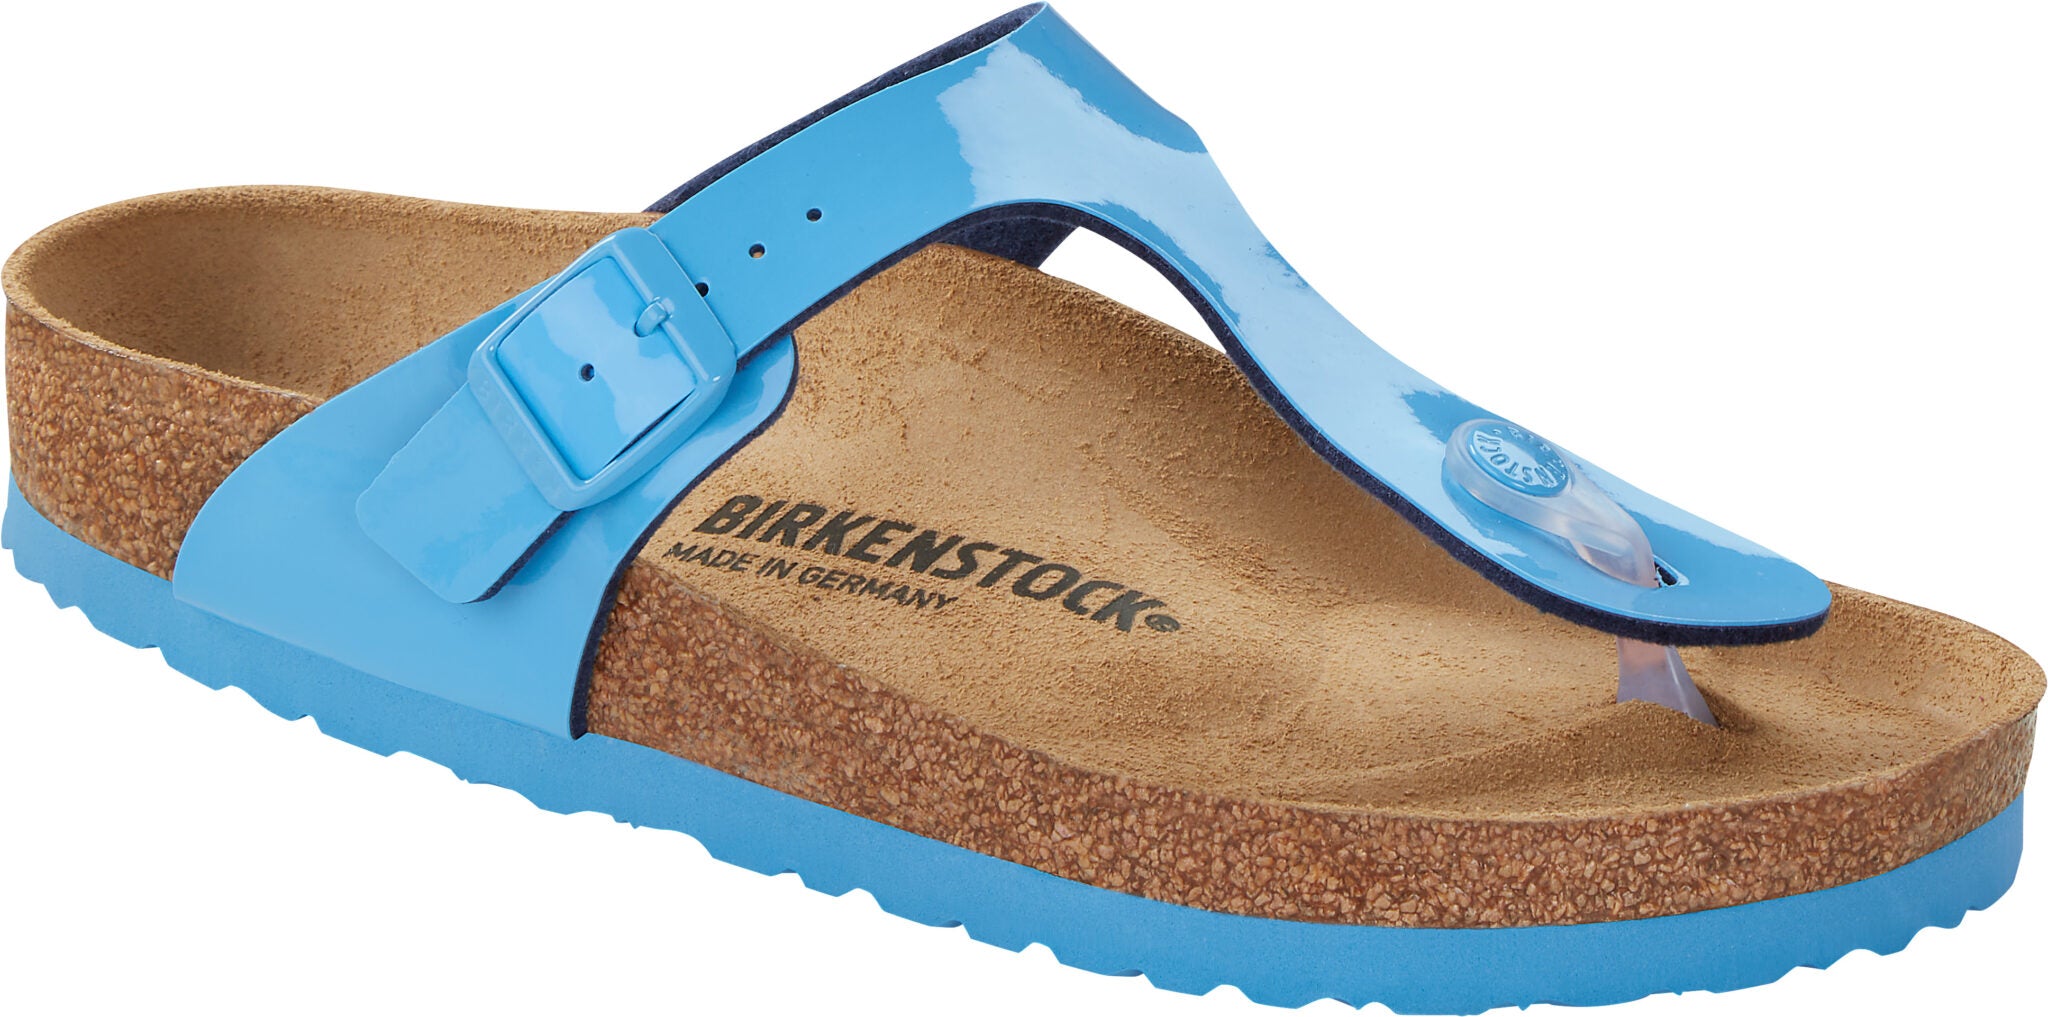 Birkenstock Arizona Gizeh Sky Blue Candy Pink Patent Sandals Slides Birko Flor - Bartel-Shop